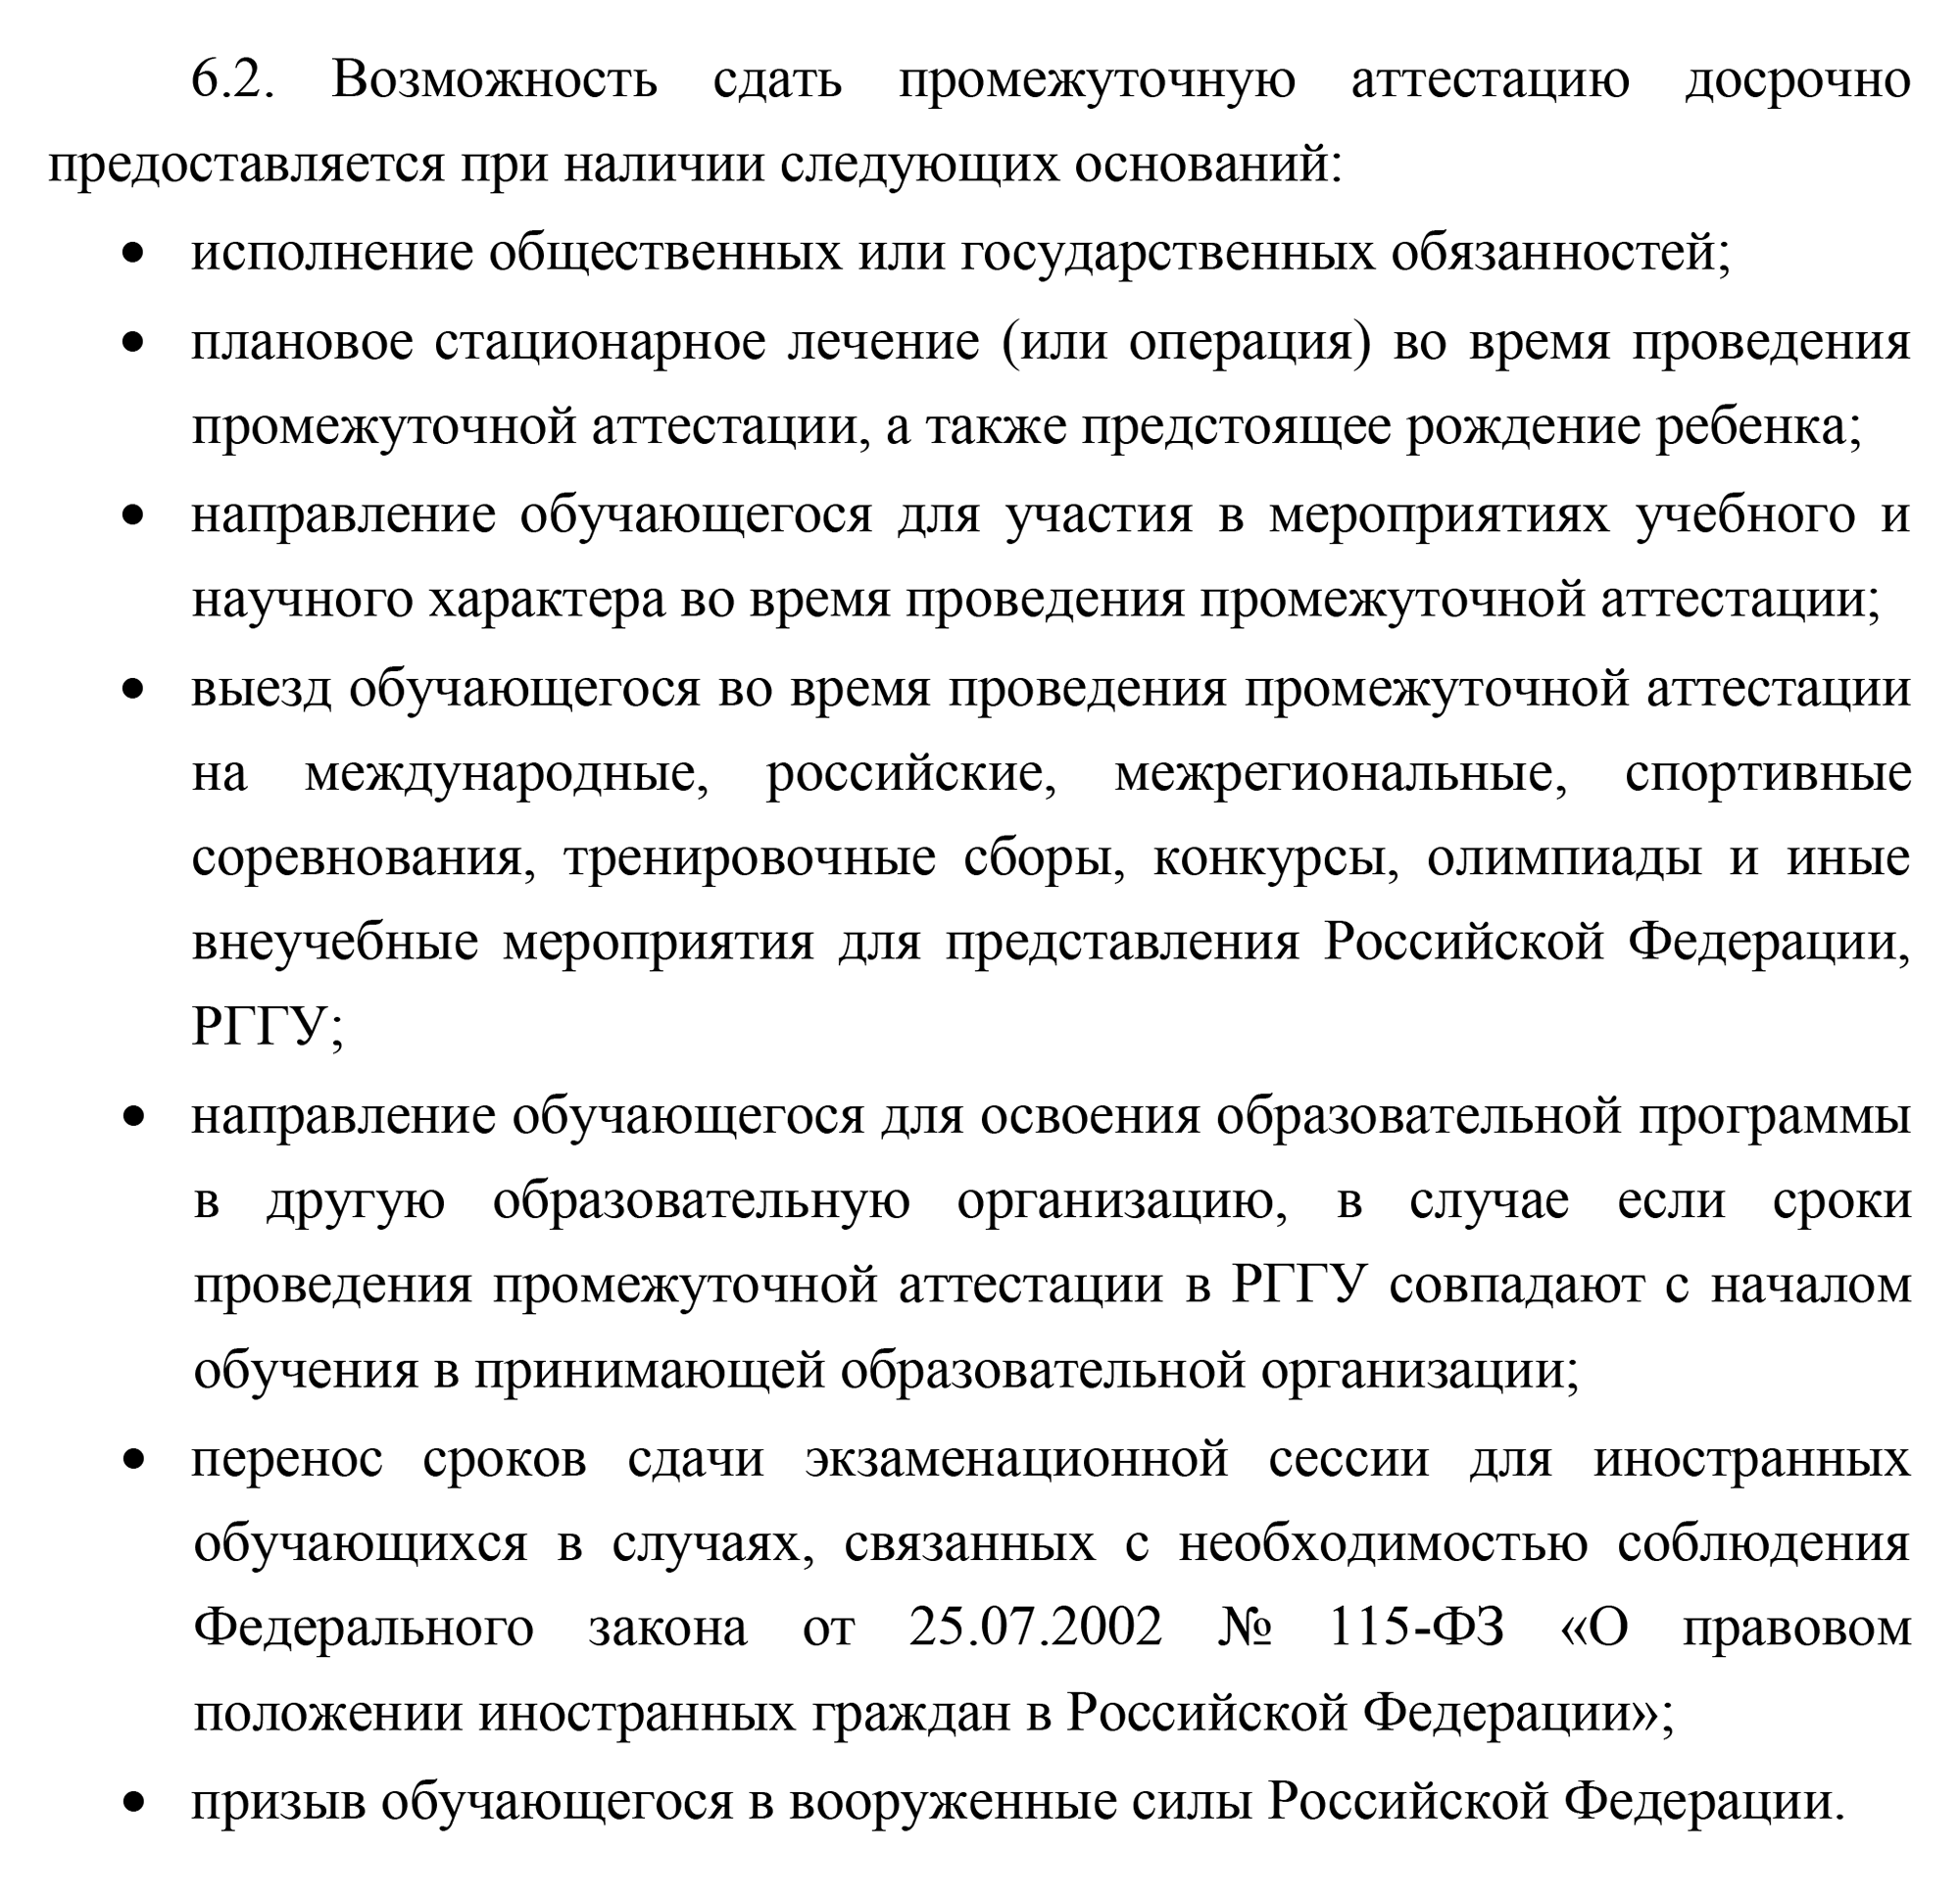 Вот, например, уважительные причины для досрочной сессии в РГГУ. Источник: rsuh.ru